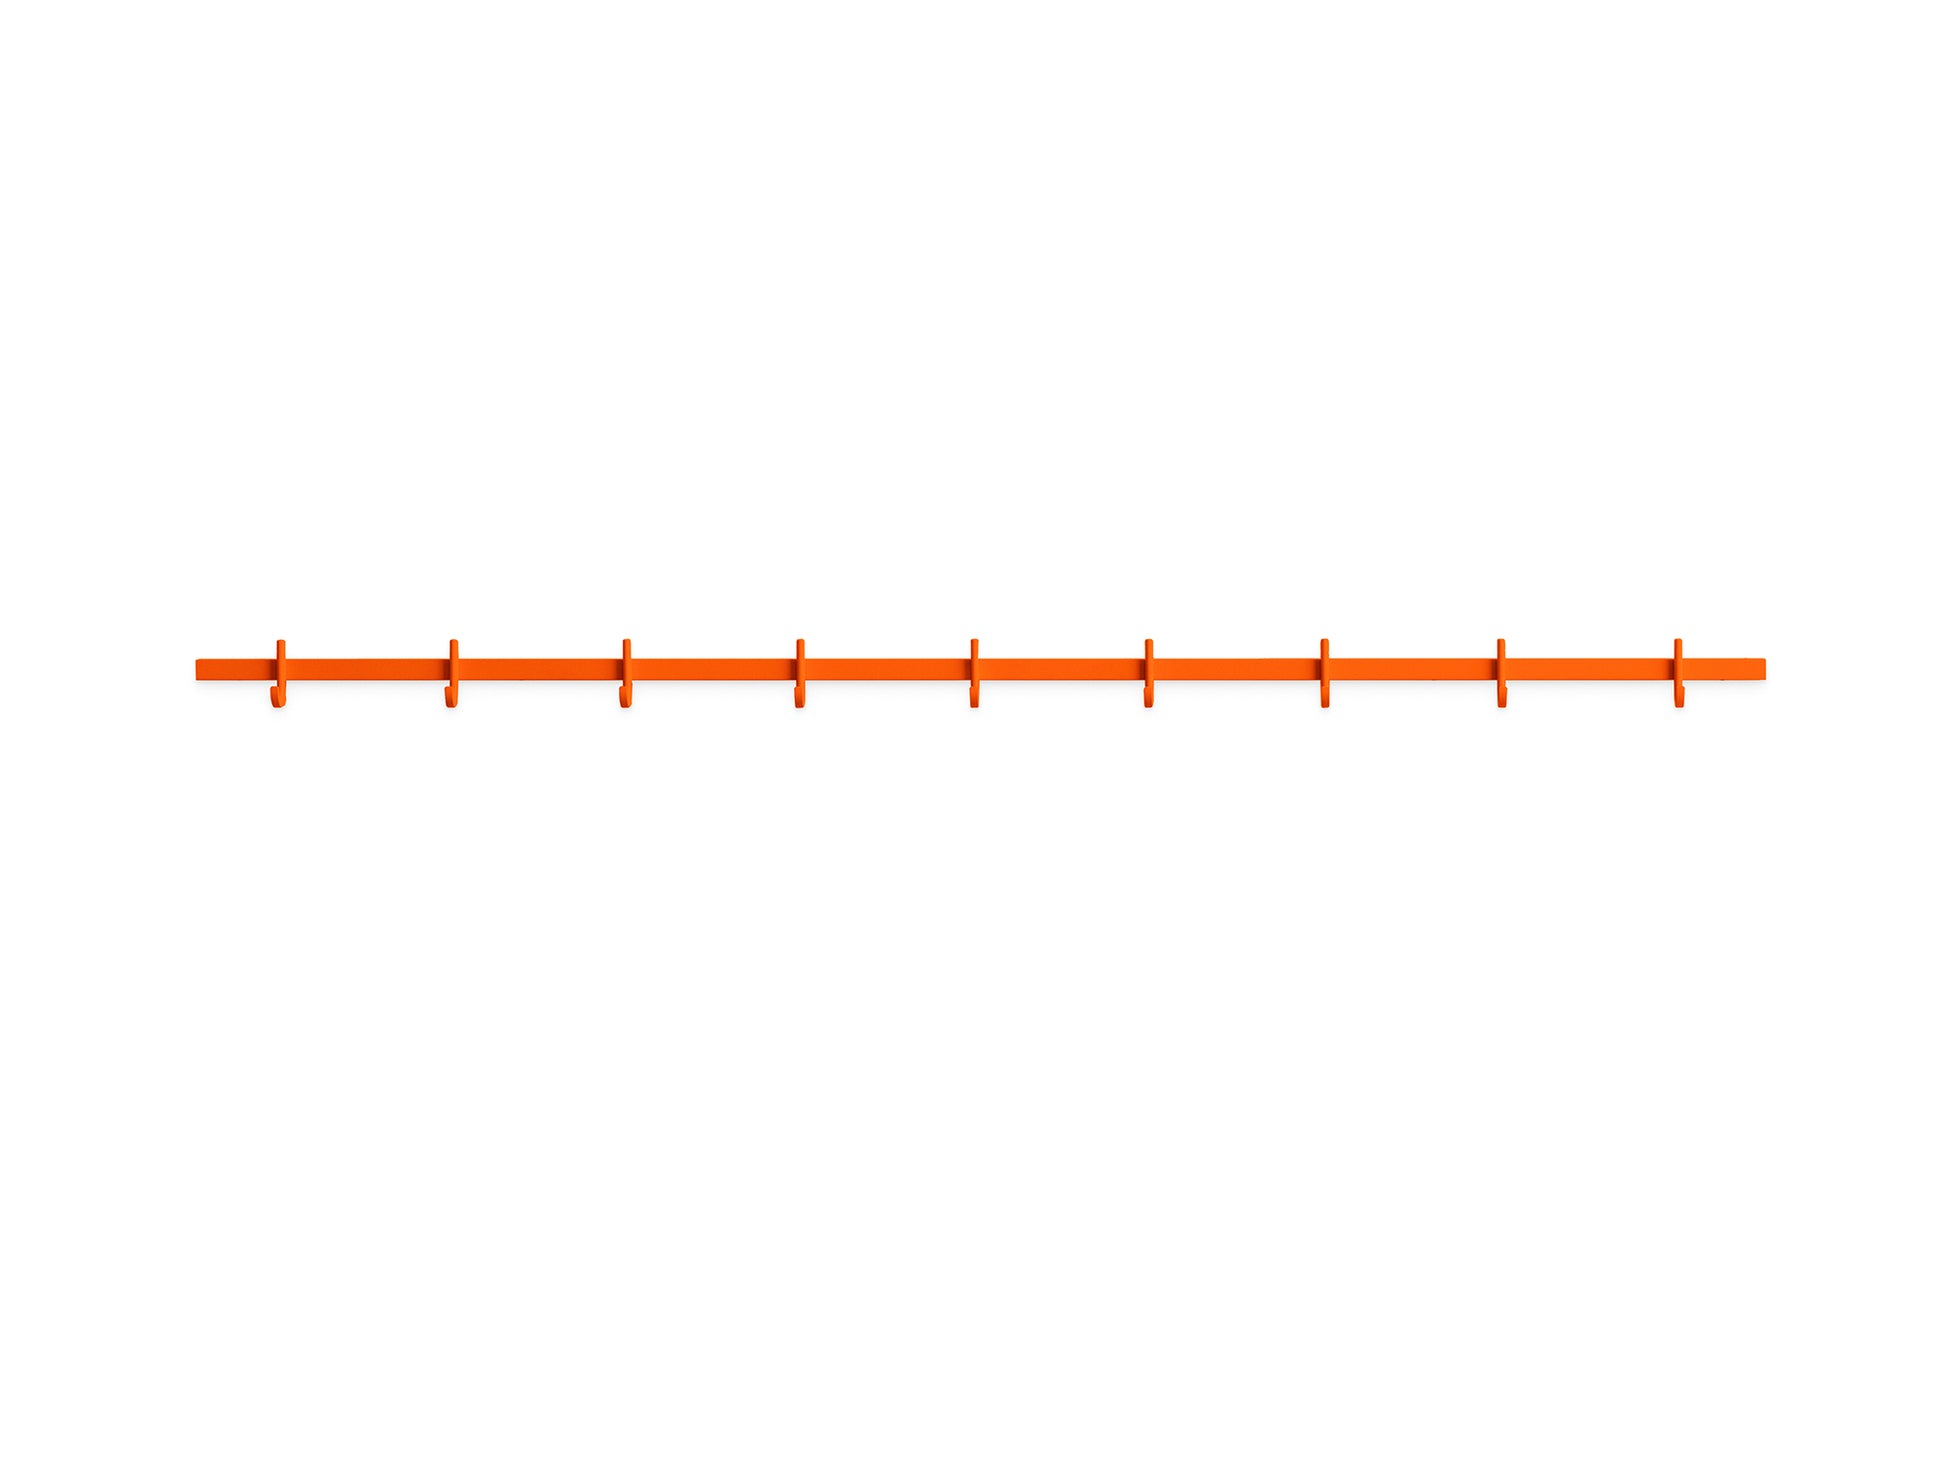 Relief Hook Rail by HAY - Large / Orange